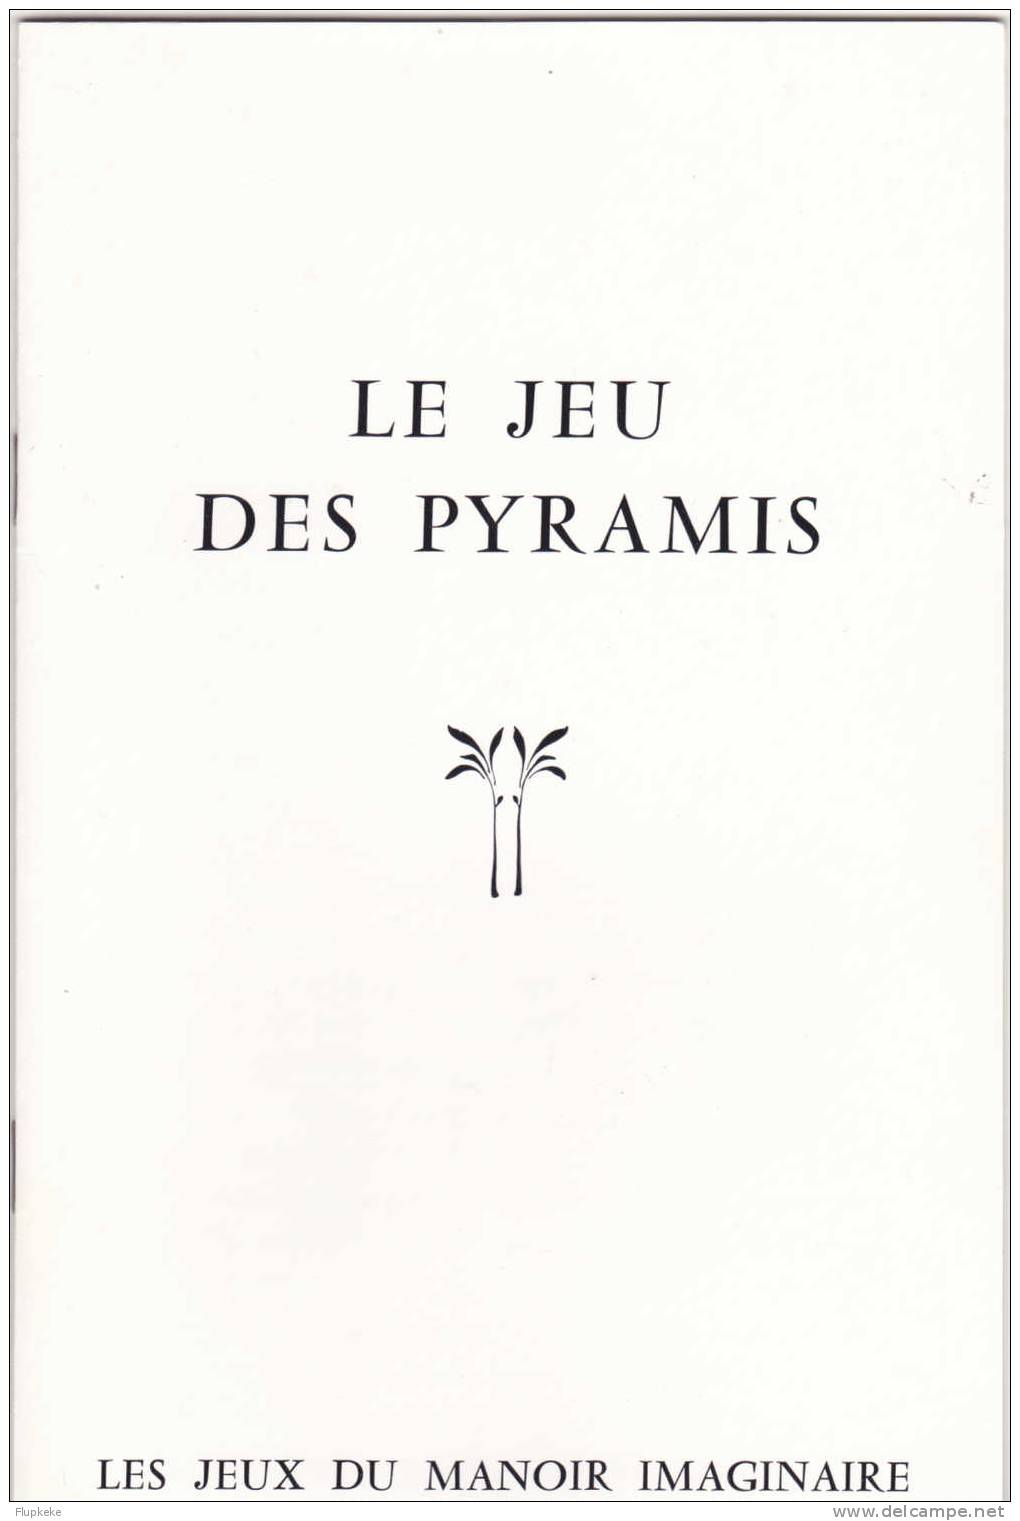 Le Jeu Des Pyramis Bernard Girette 1979 Les Jeux Du Manoir Imaginaire Jeux Descartes - Brain Teasers, Brain Games